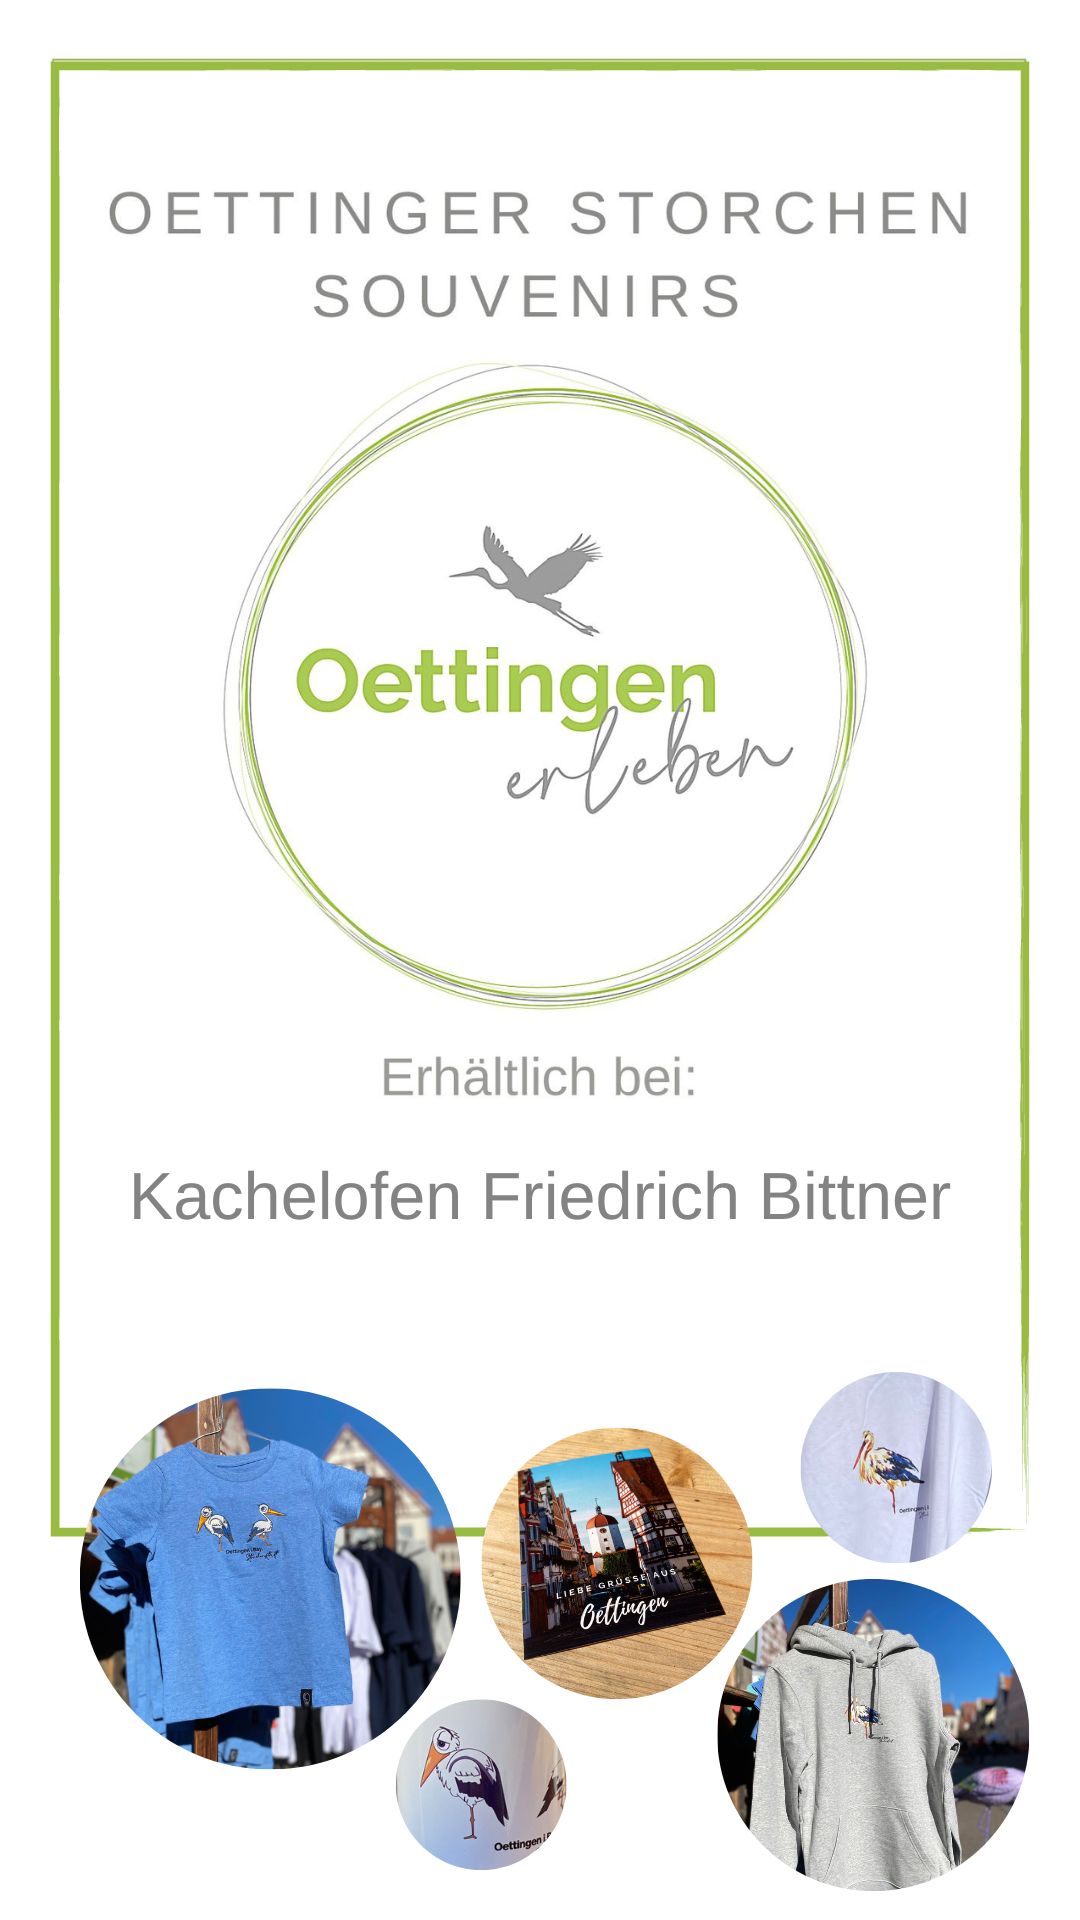 Oettinger Storchen Souvenirs hier erhältlich